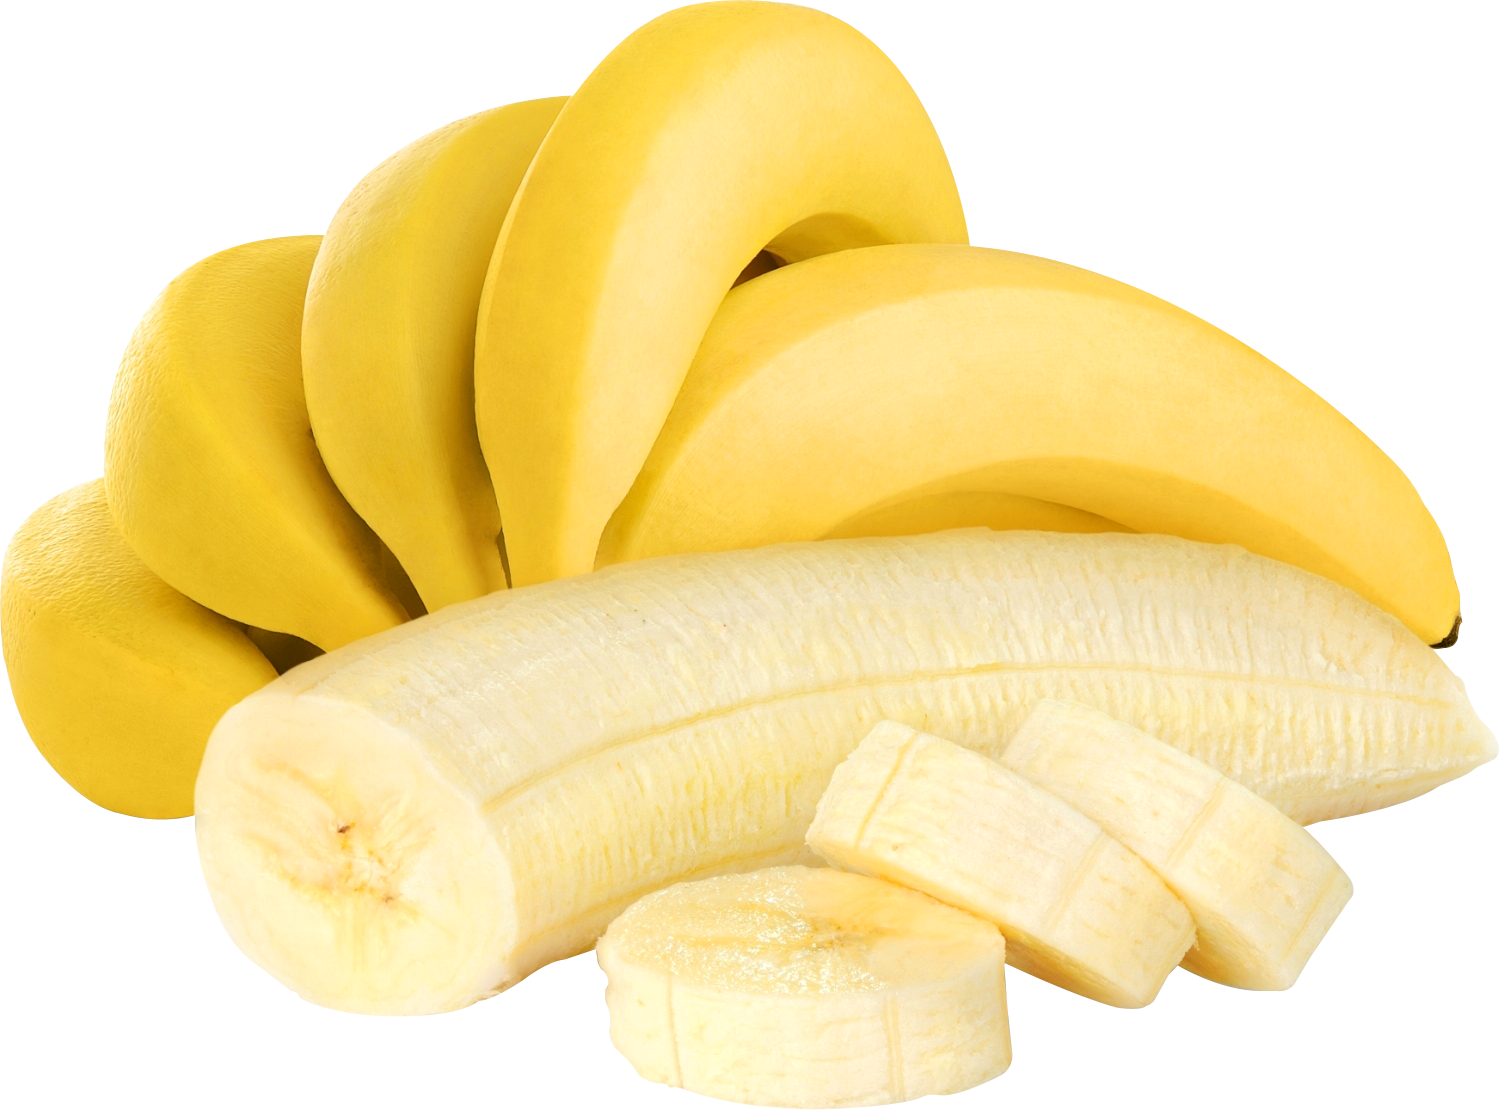 Banana Png Image - Pretty Bananas (1499x1110), Png Download